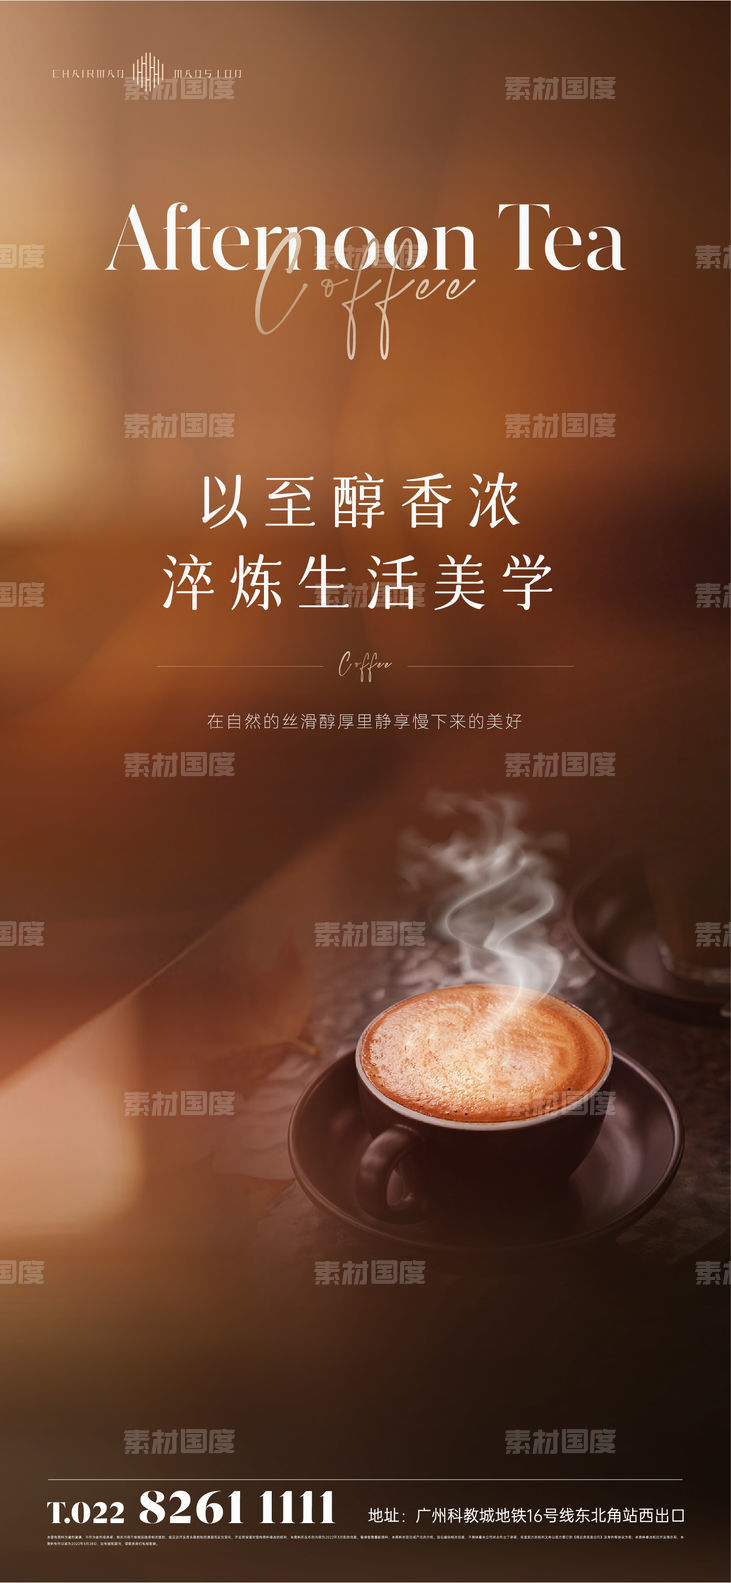 地产咖啡下午茶暖场活动海报